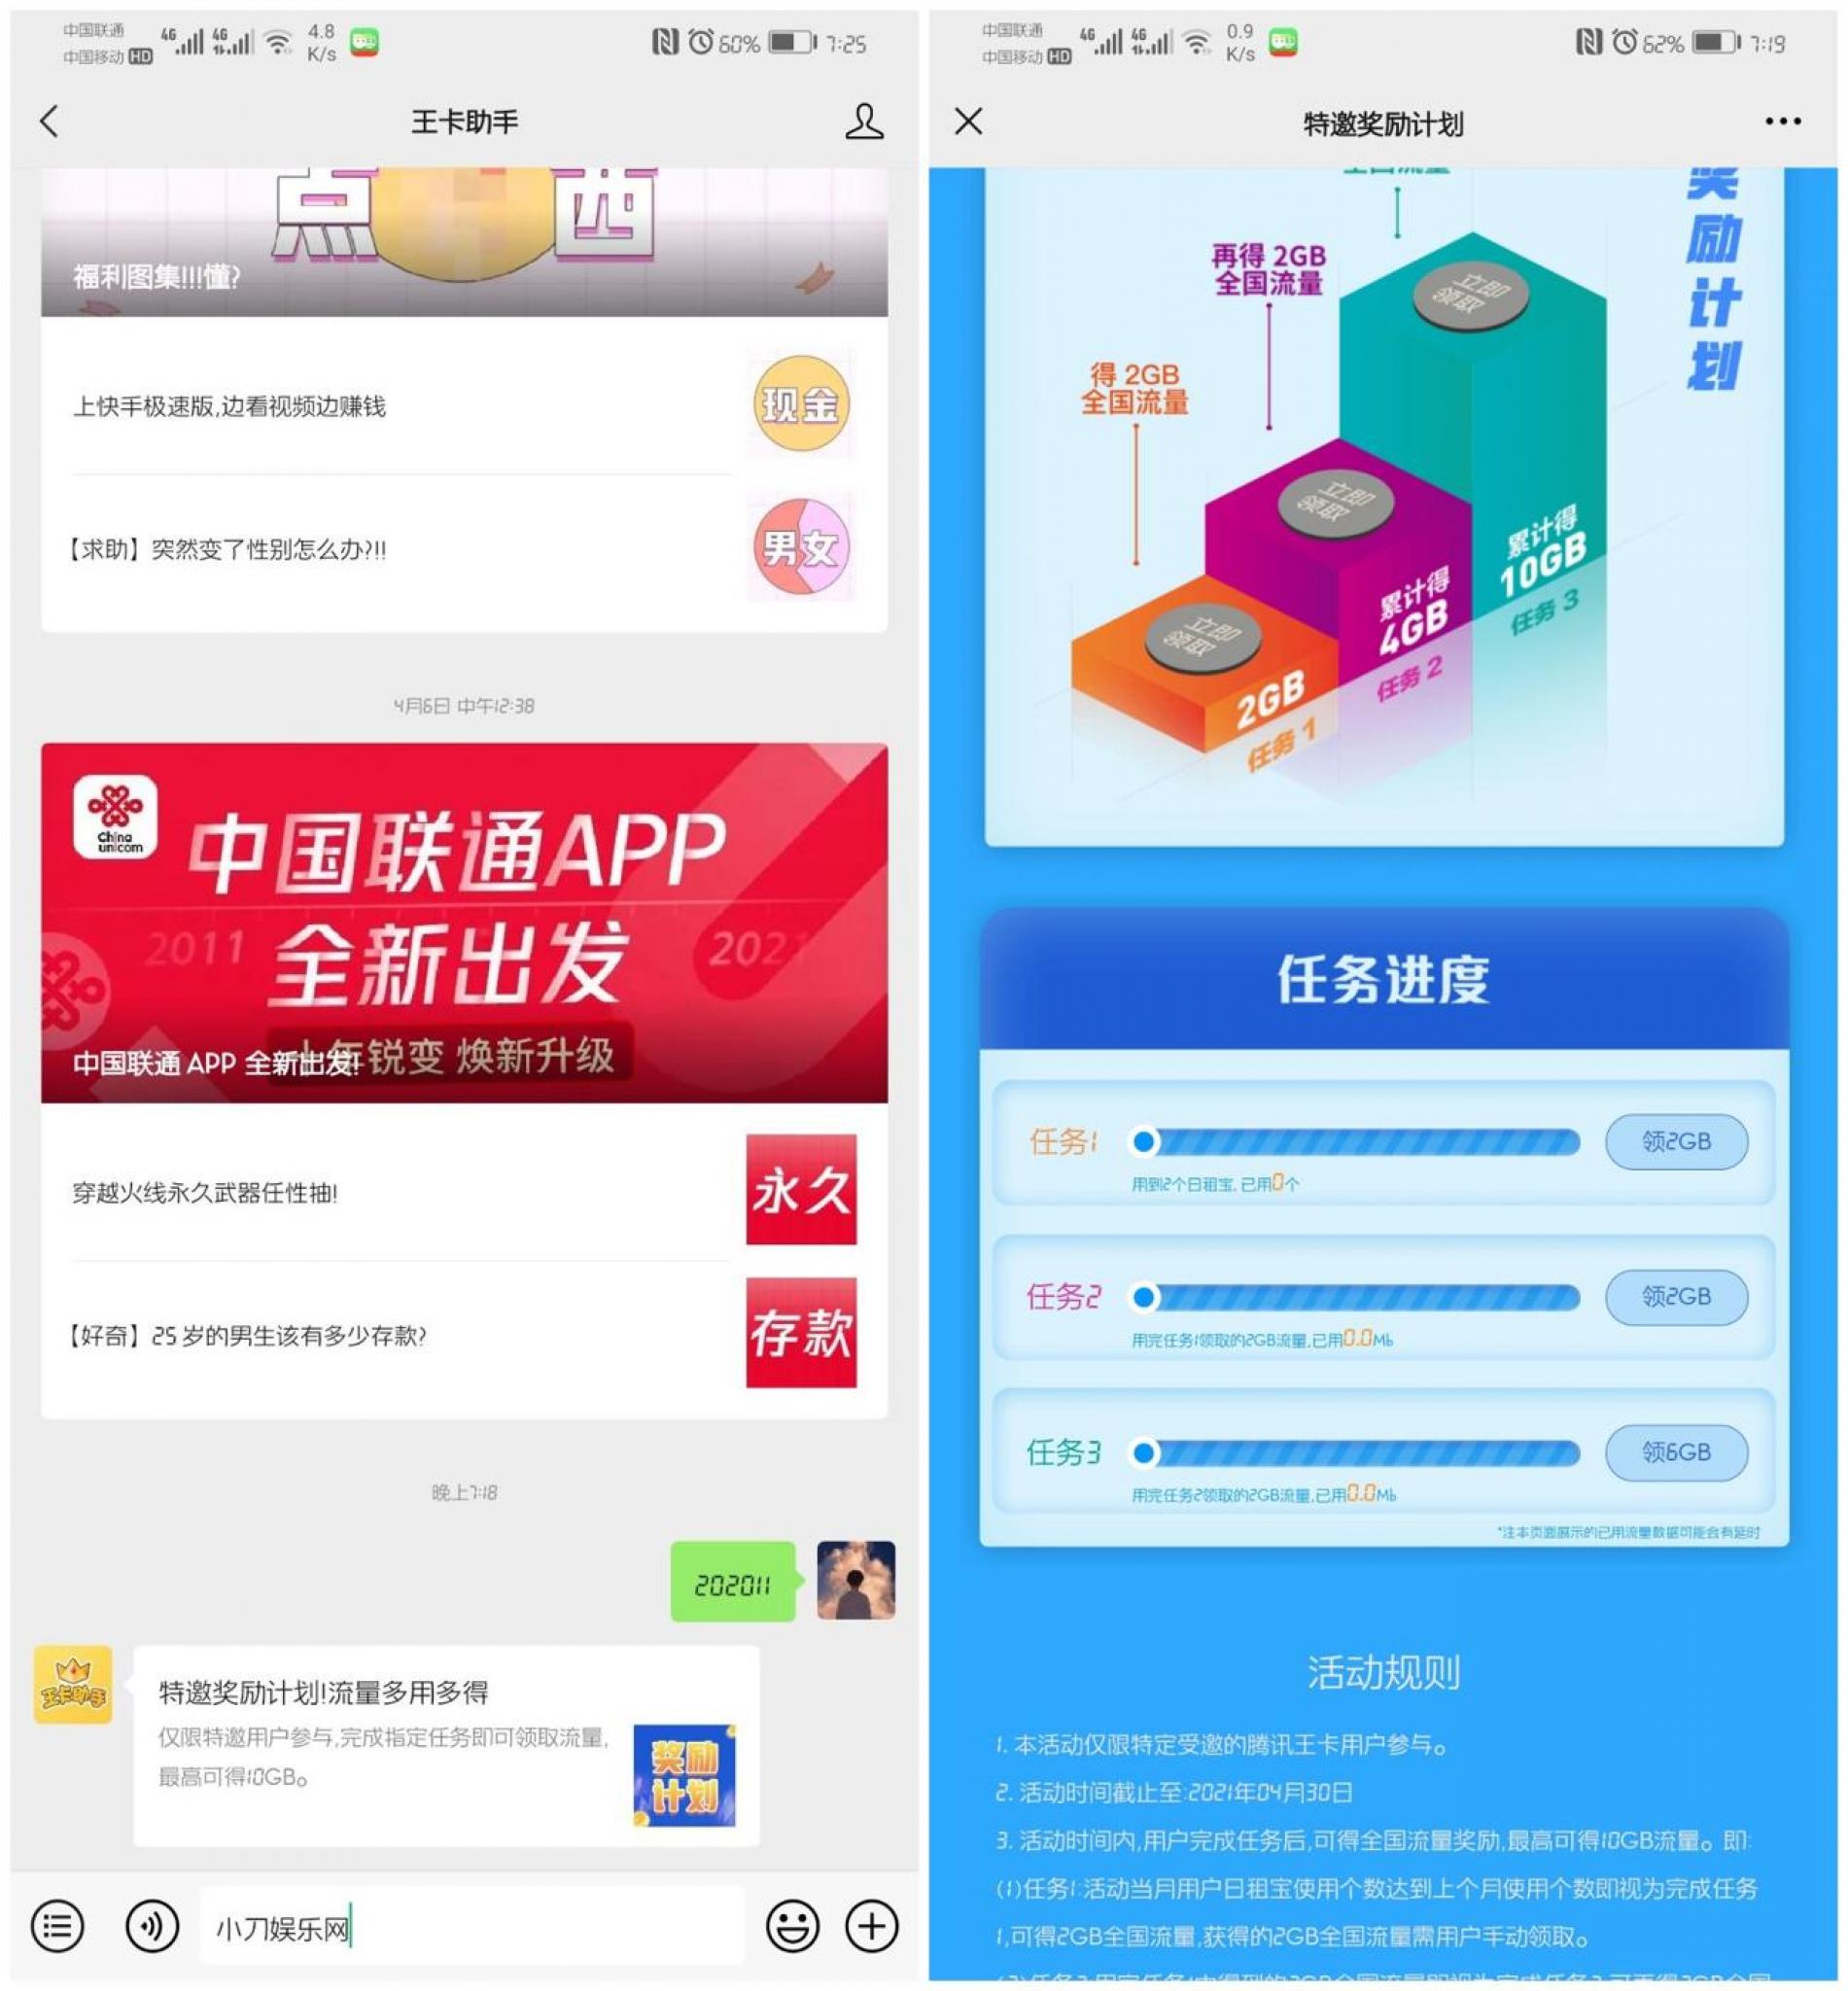 腾讯王卡特邀用户领10G流量-大鹏源码网